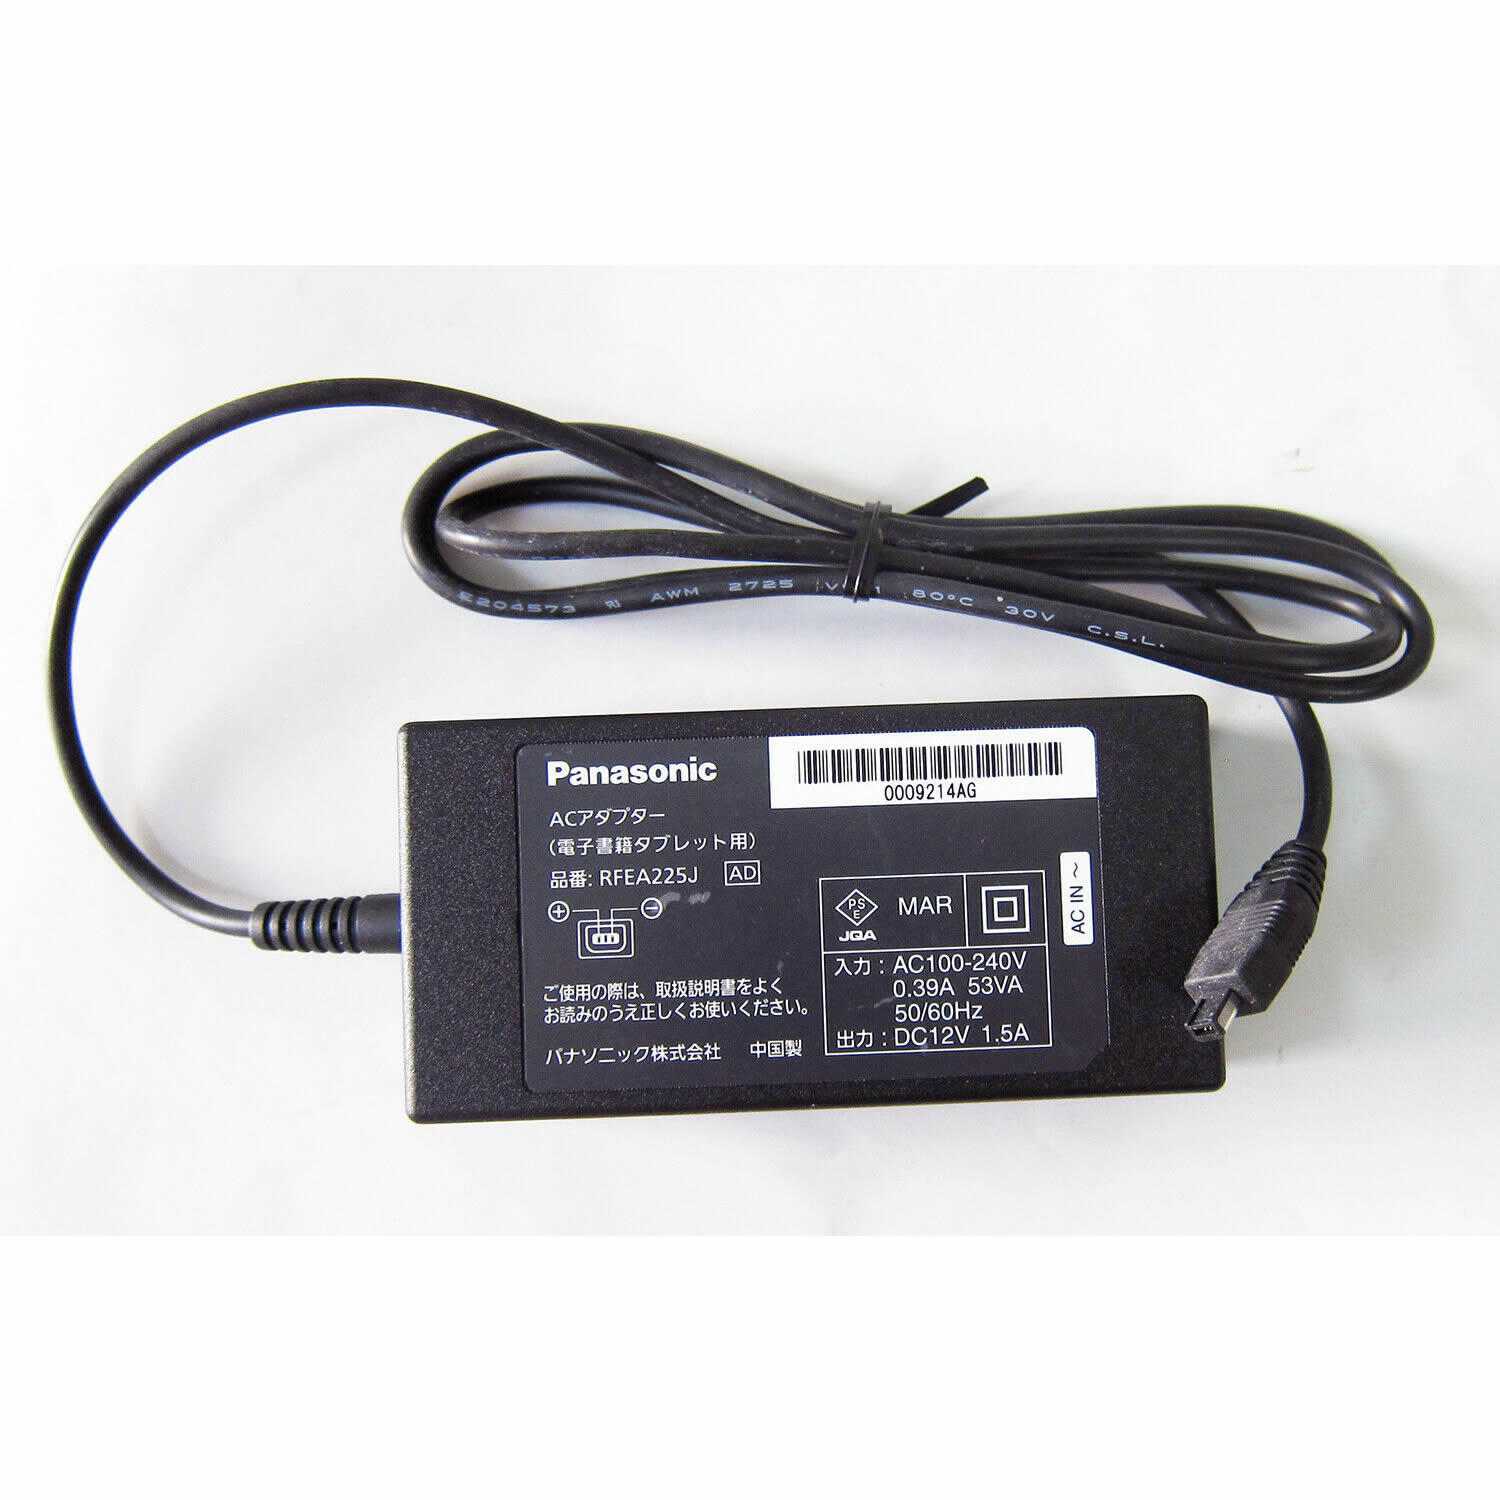 Panasonic RFEA225J adaptateur chargeur 12V 1.5A 18W alimentation originale pour Panasonic V2440, FZ-A1 séries